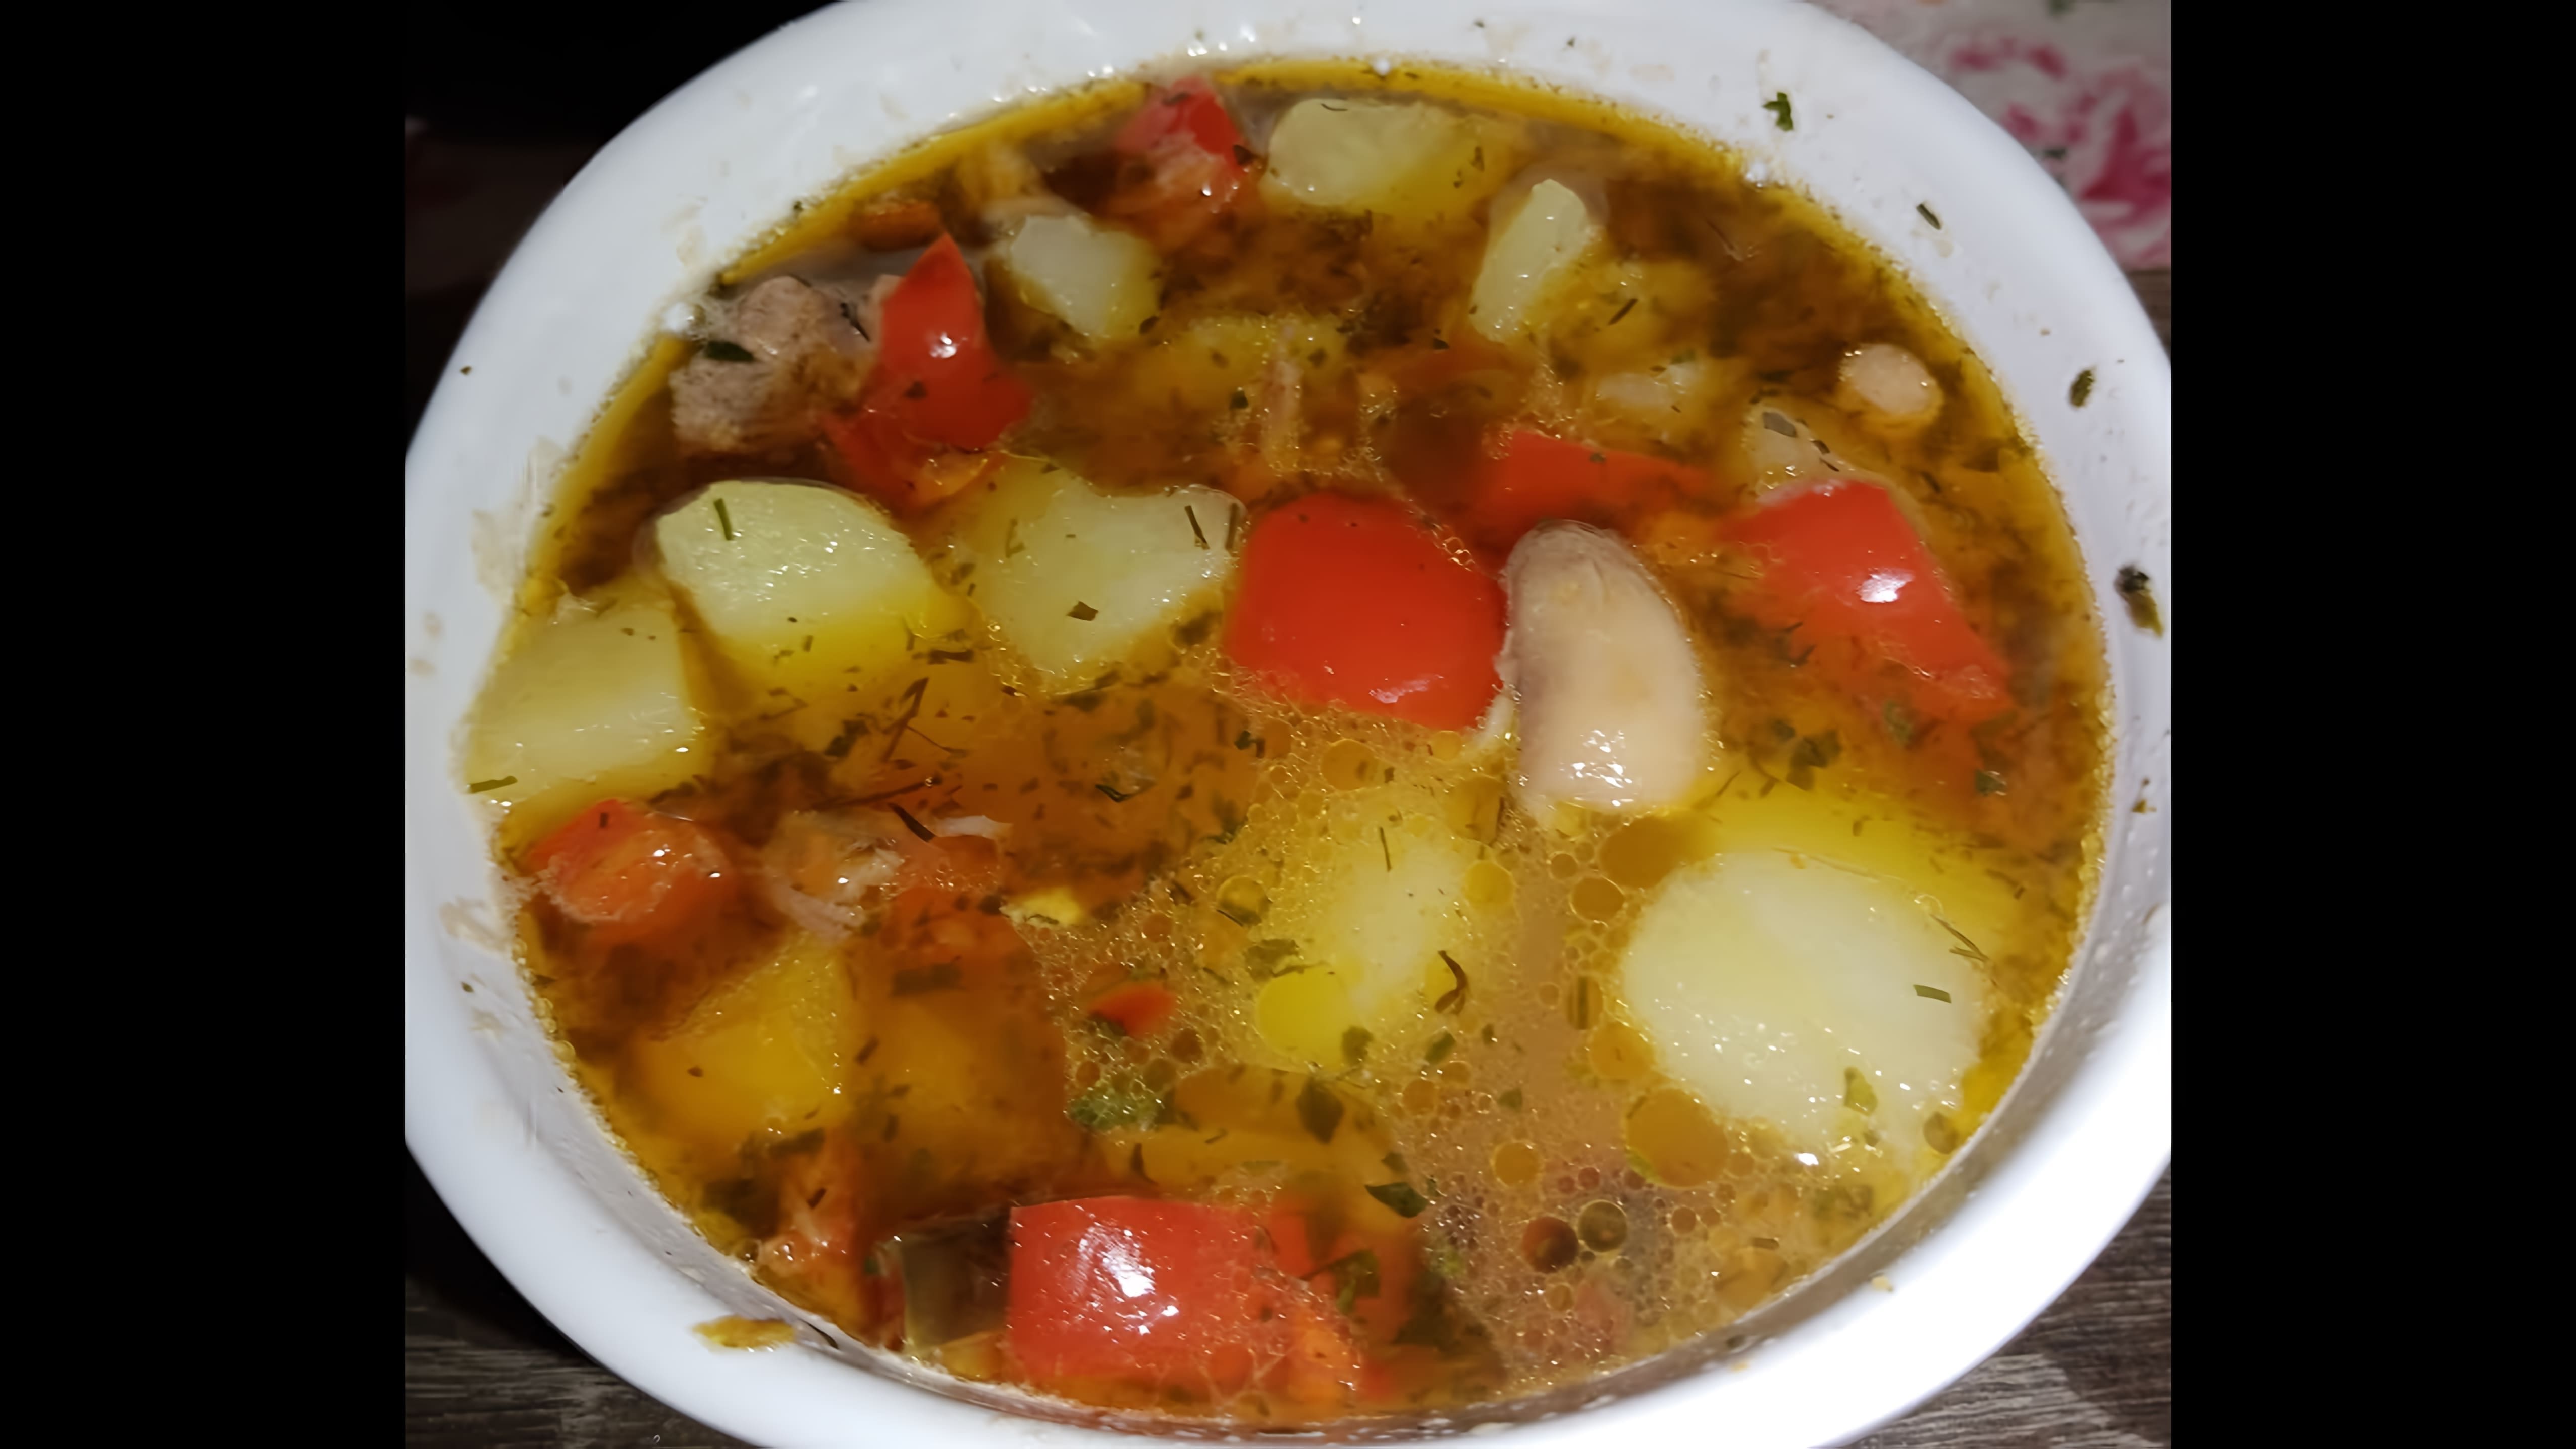 Суп с грибами и тушёнкой - это вкусное и сытное блюдо, которое можно приготовить в домашних условиях